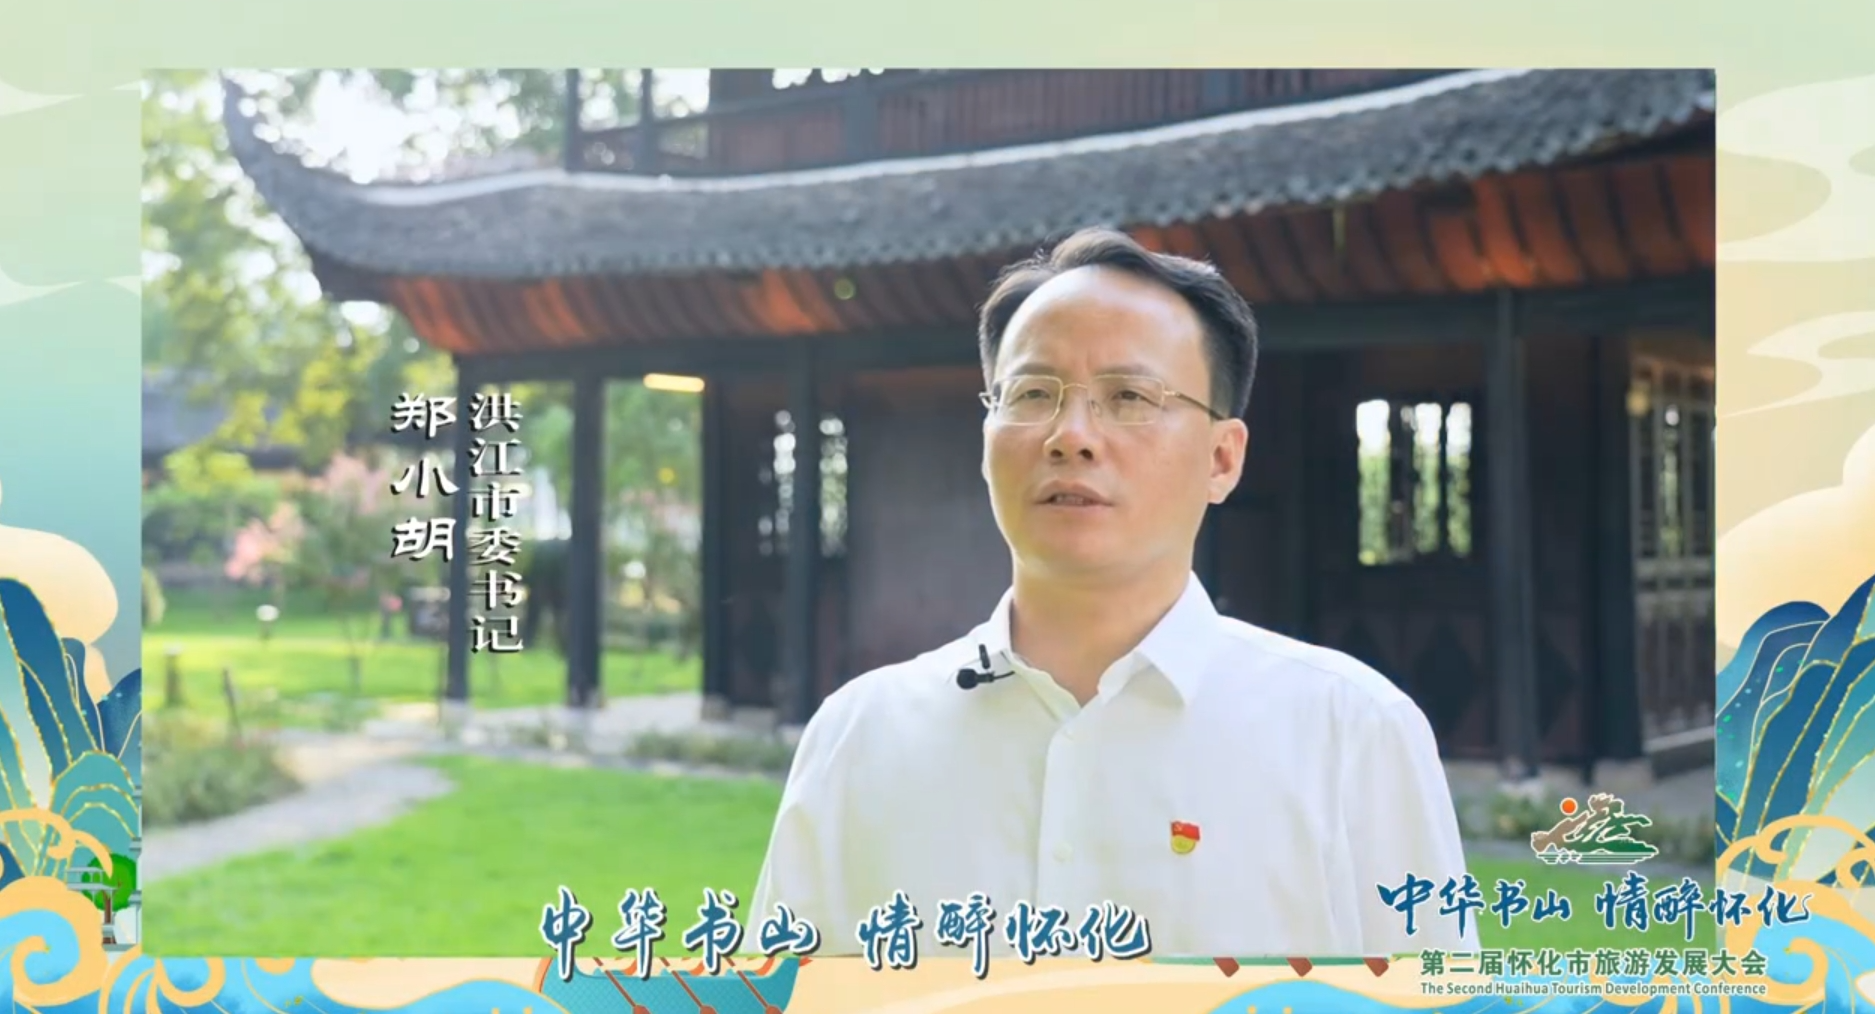 【微视频】为第二届怀化市旅游发展大会点赞 · 洪江市篇